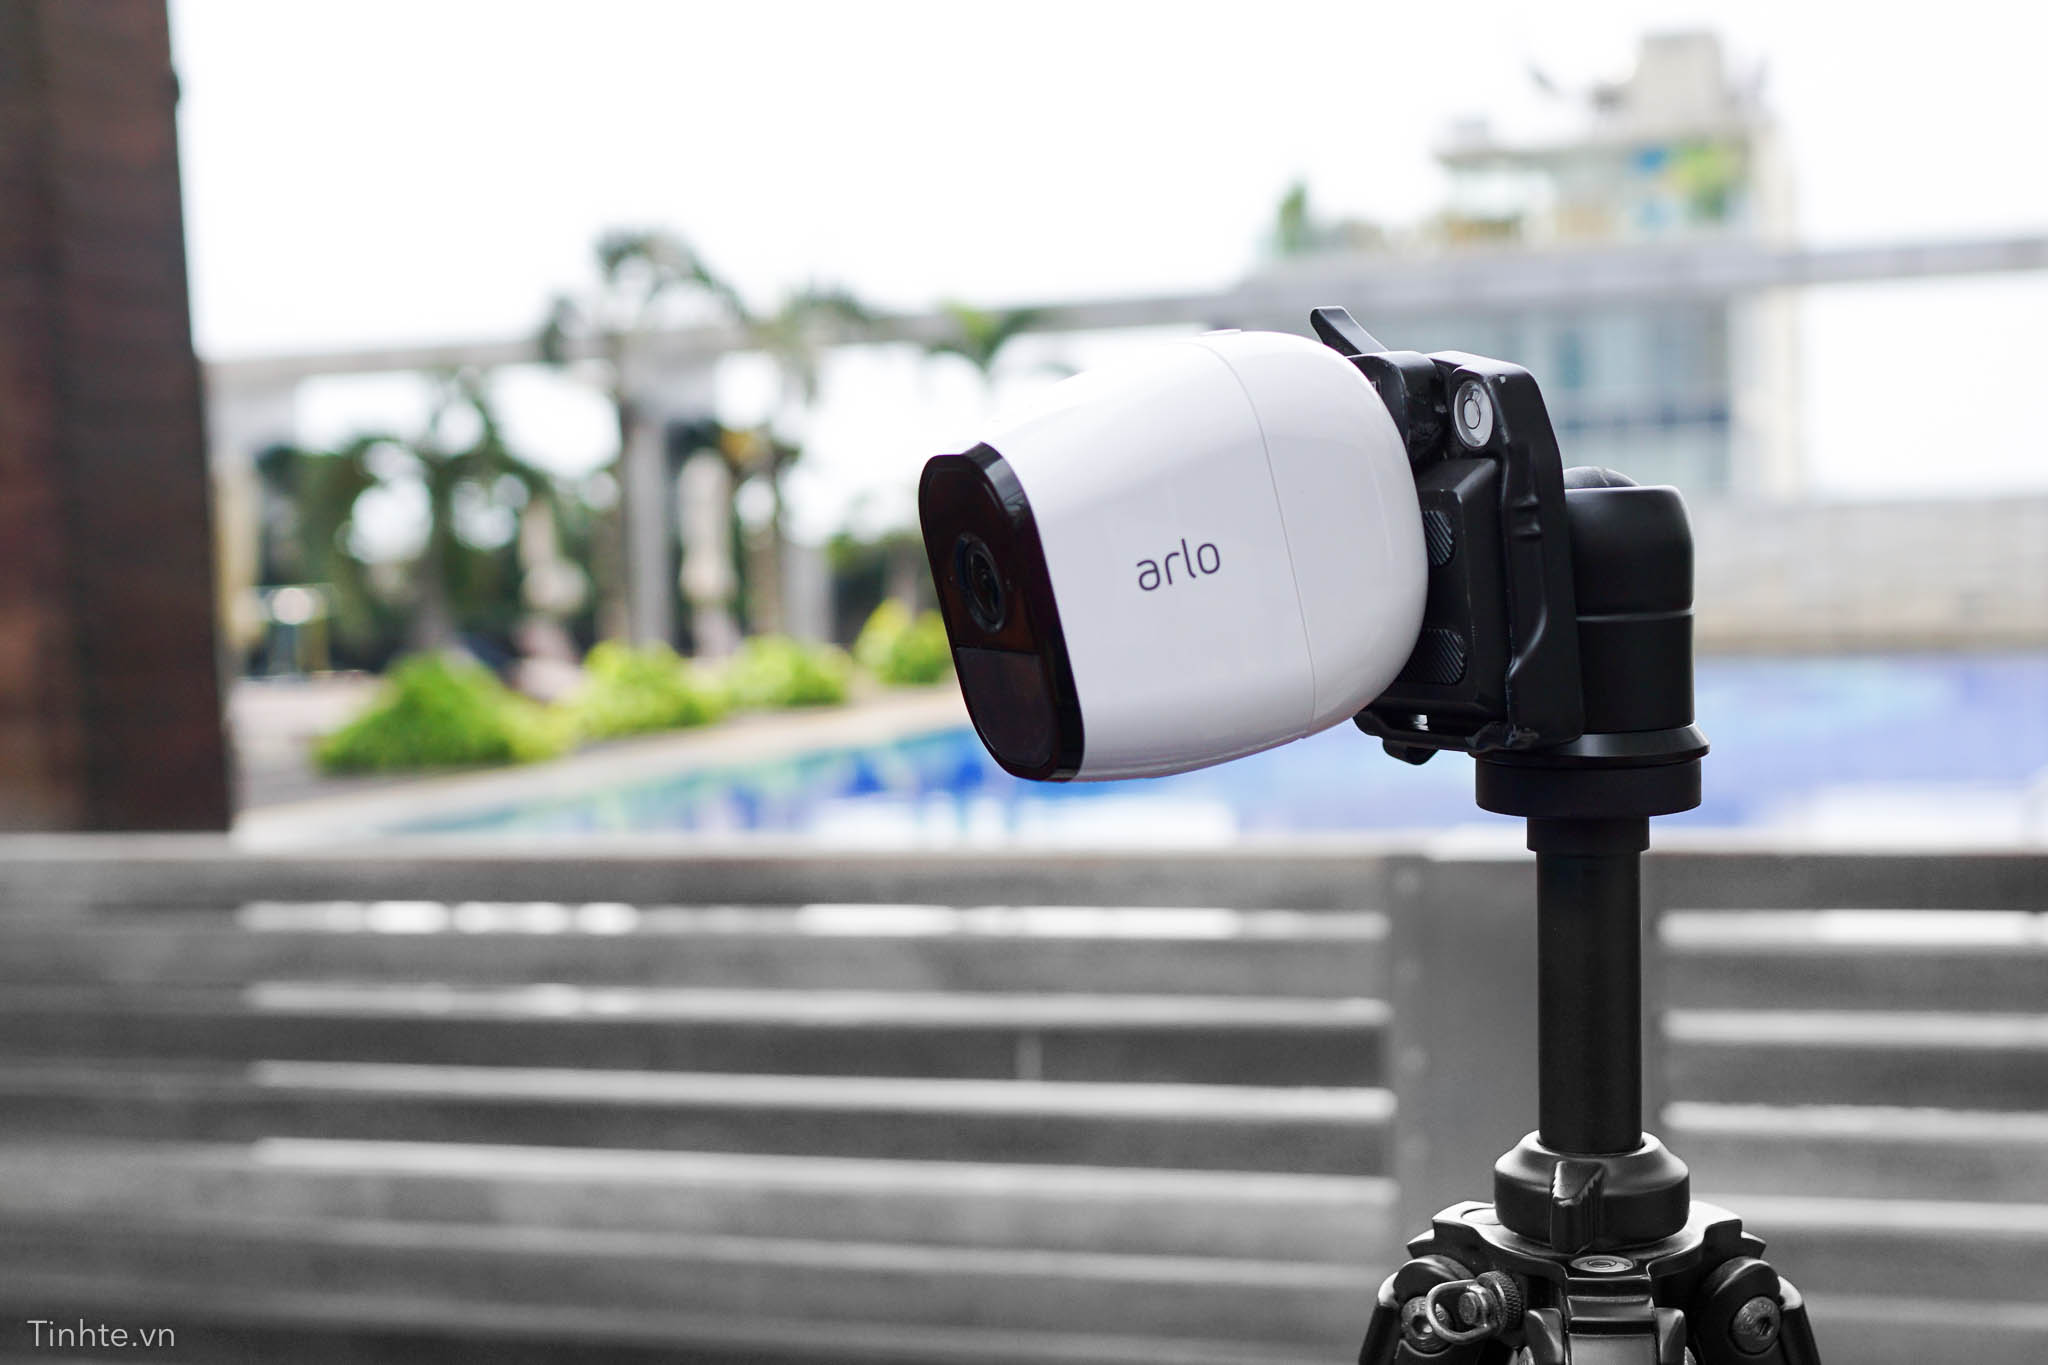 Netgear Arlo Pro: camera an ninh không dây đúng nghĩa, chống mưa gió, pin 6 tháng sạc 1 lần 4195389_tinhte-netgear-arlo-6